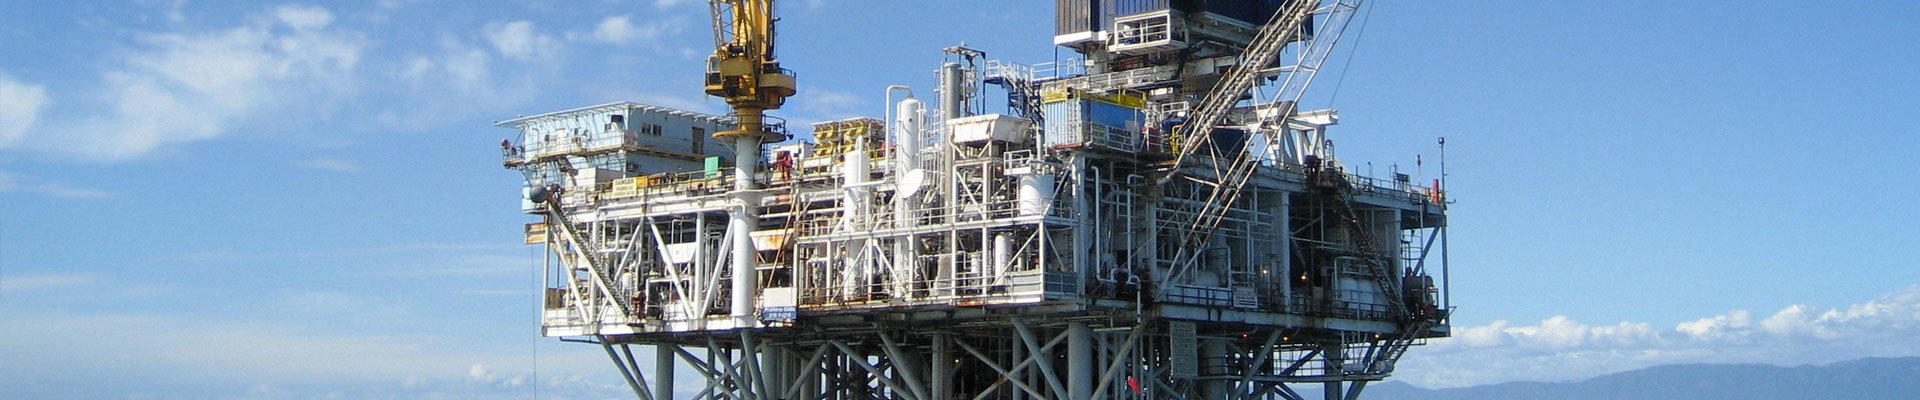 SMD Bestückung und Leiterplattenbestückung für Öl- und Bergbau